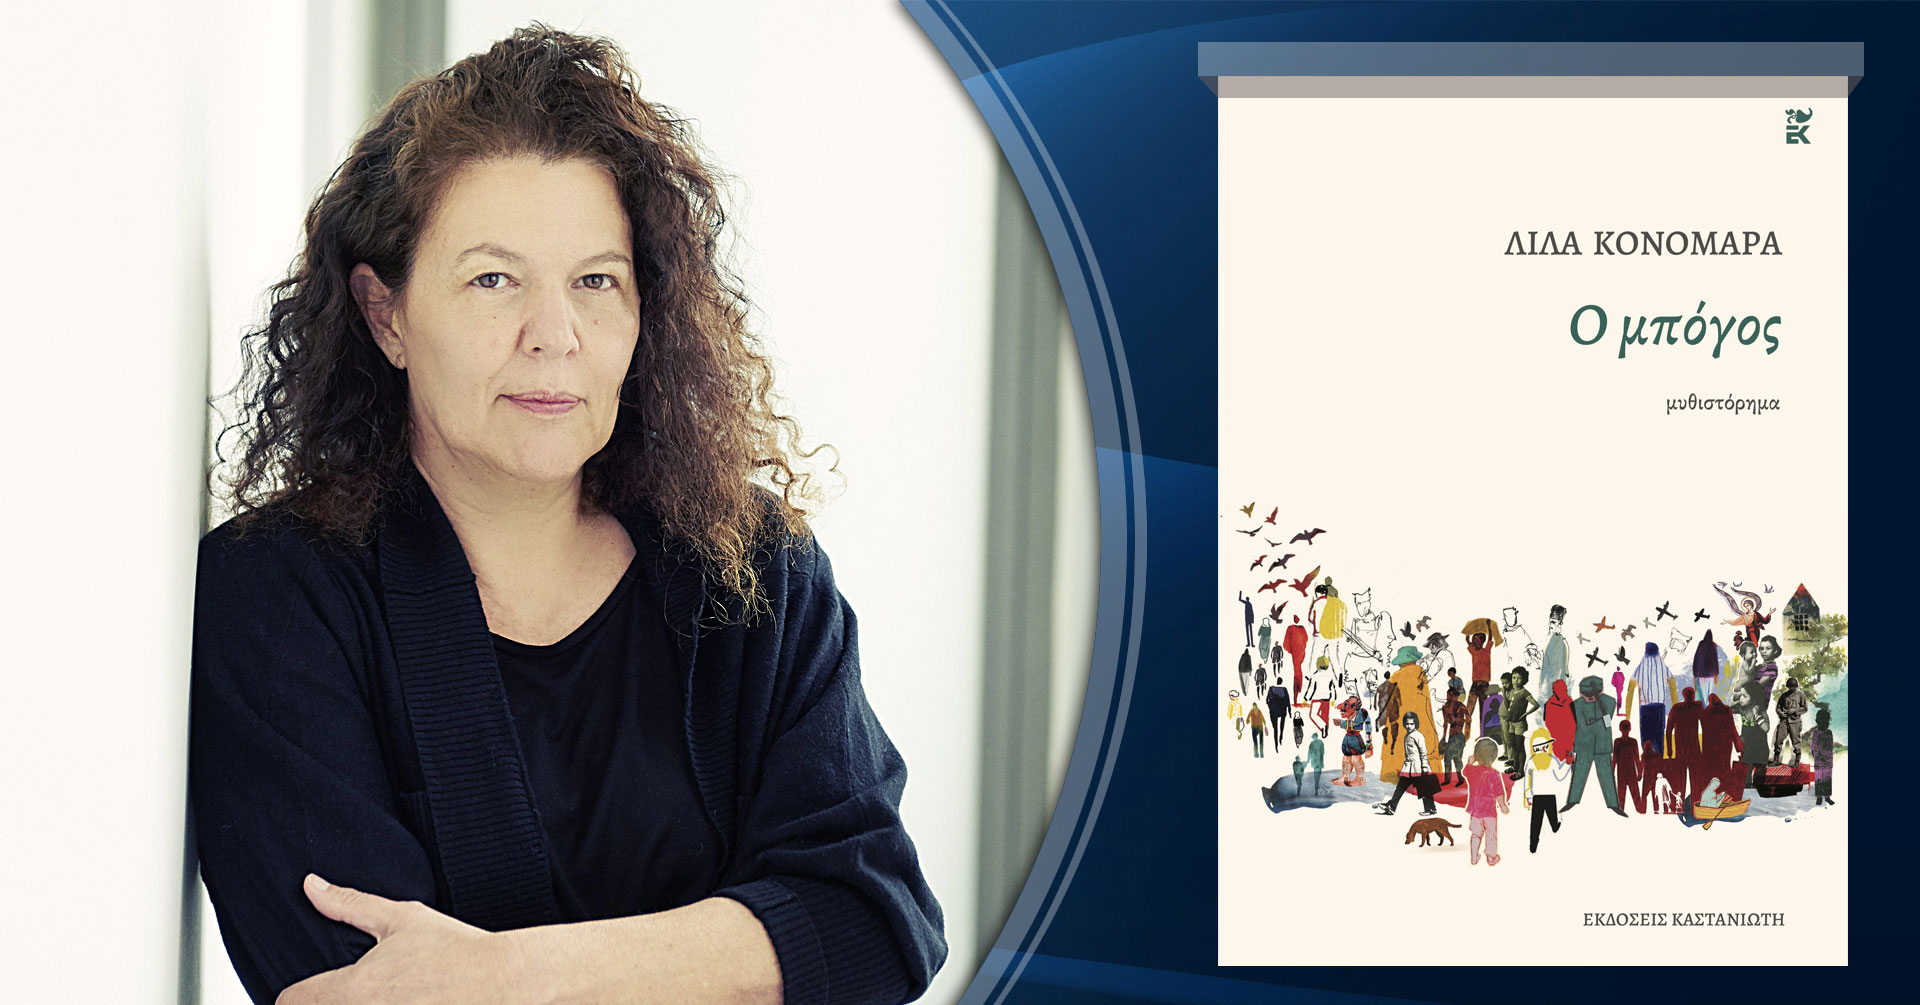 Λίλα Κονομάρα, μιλάει στην Μάγδα Παπαδημητρίου-Σαμοθράκη για το βιβλίο της «Ο Μπόγος»